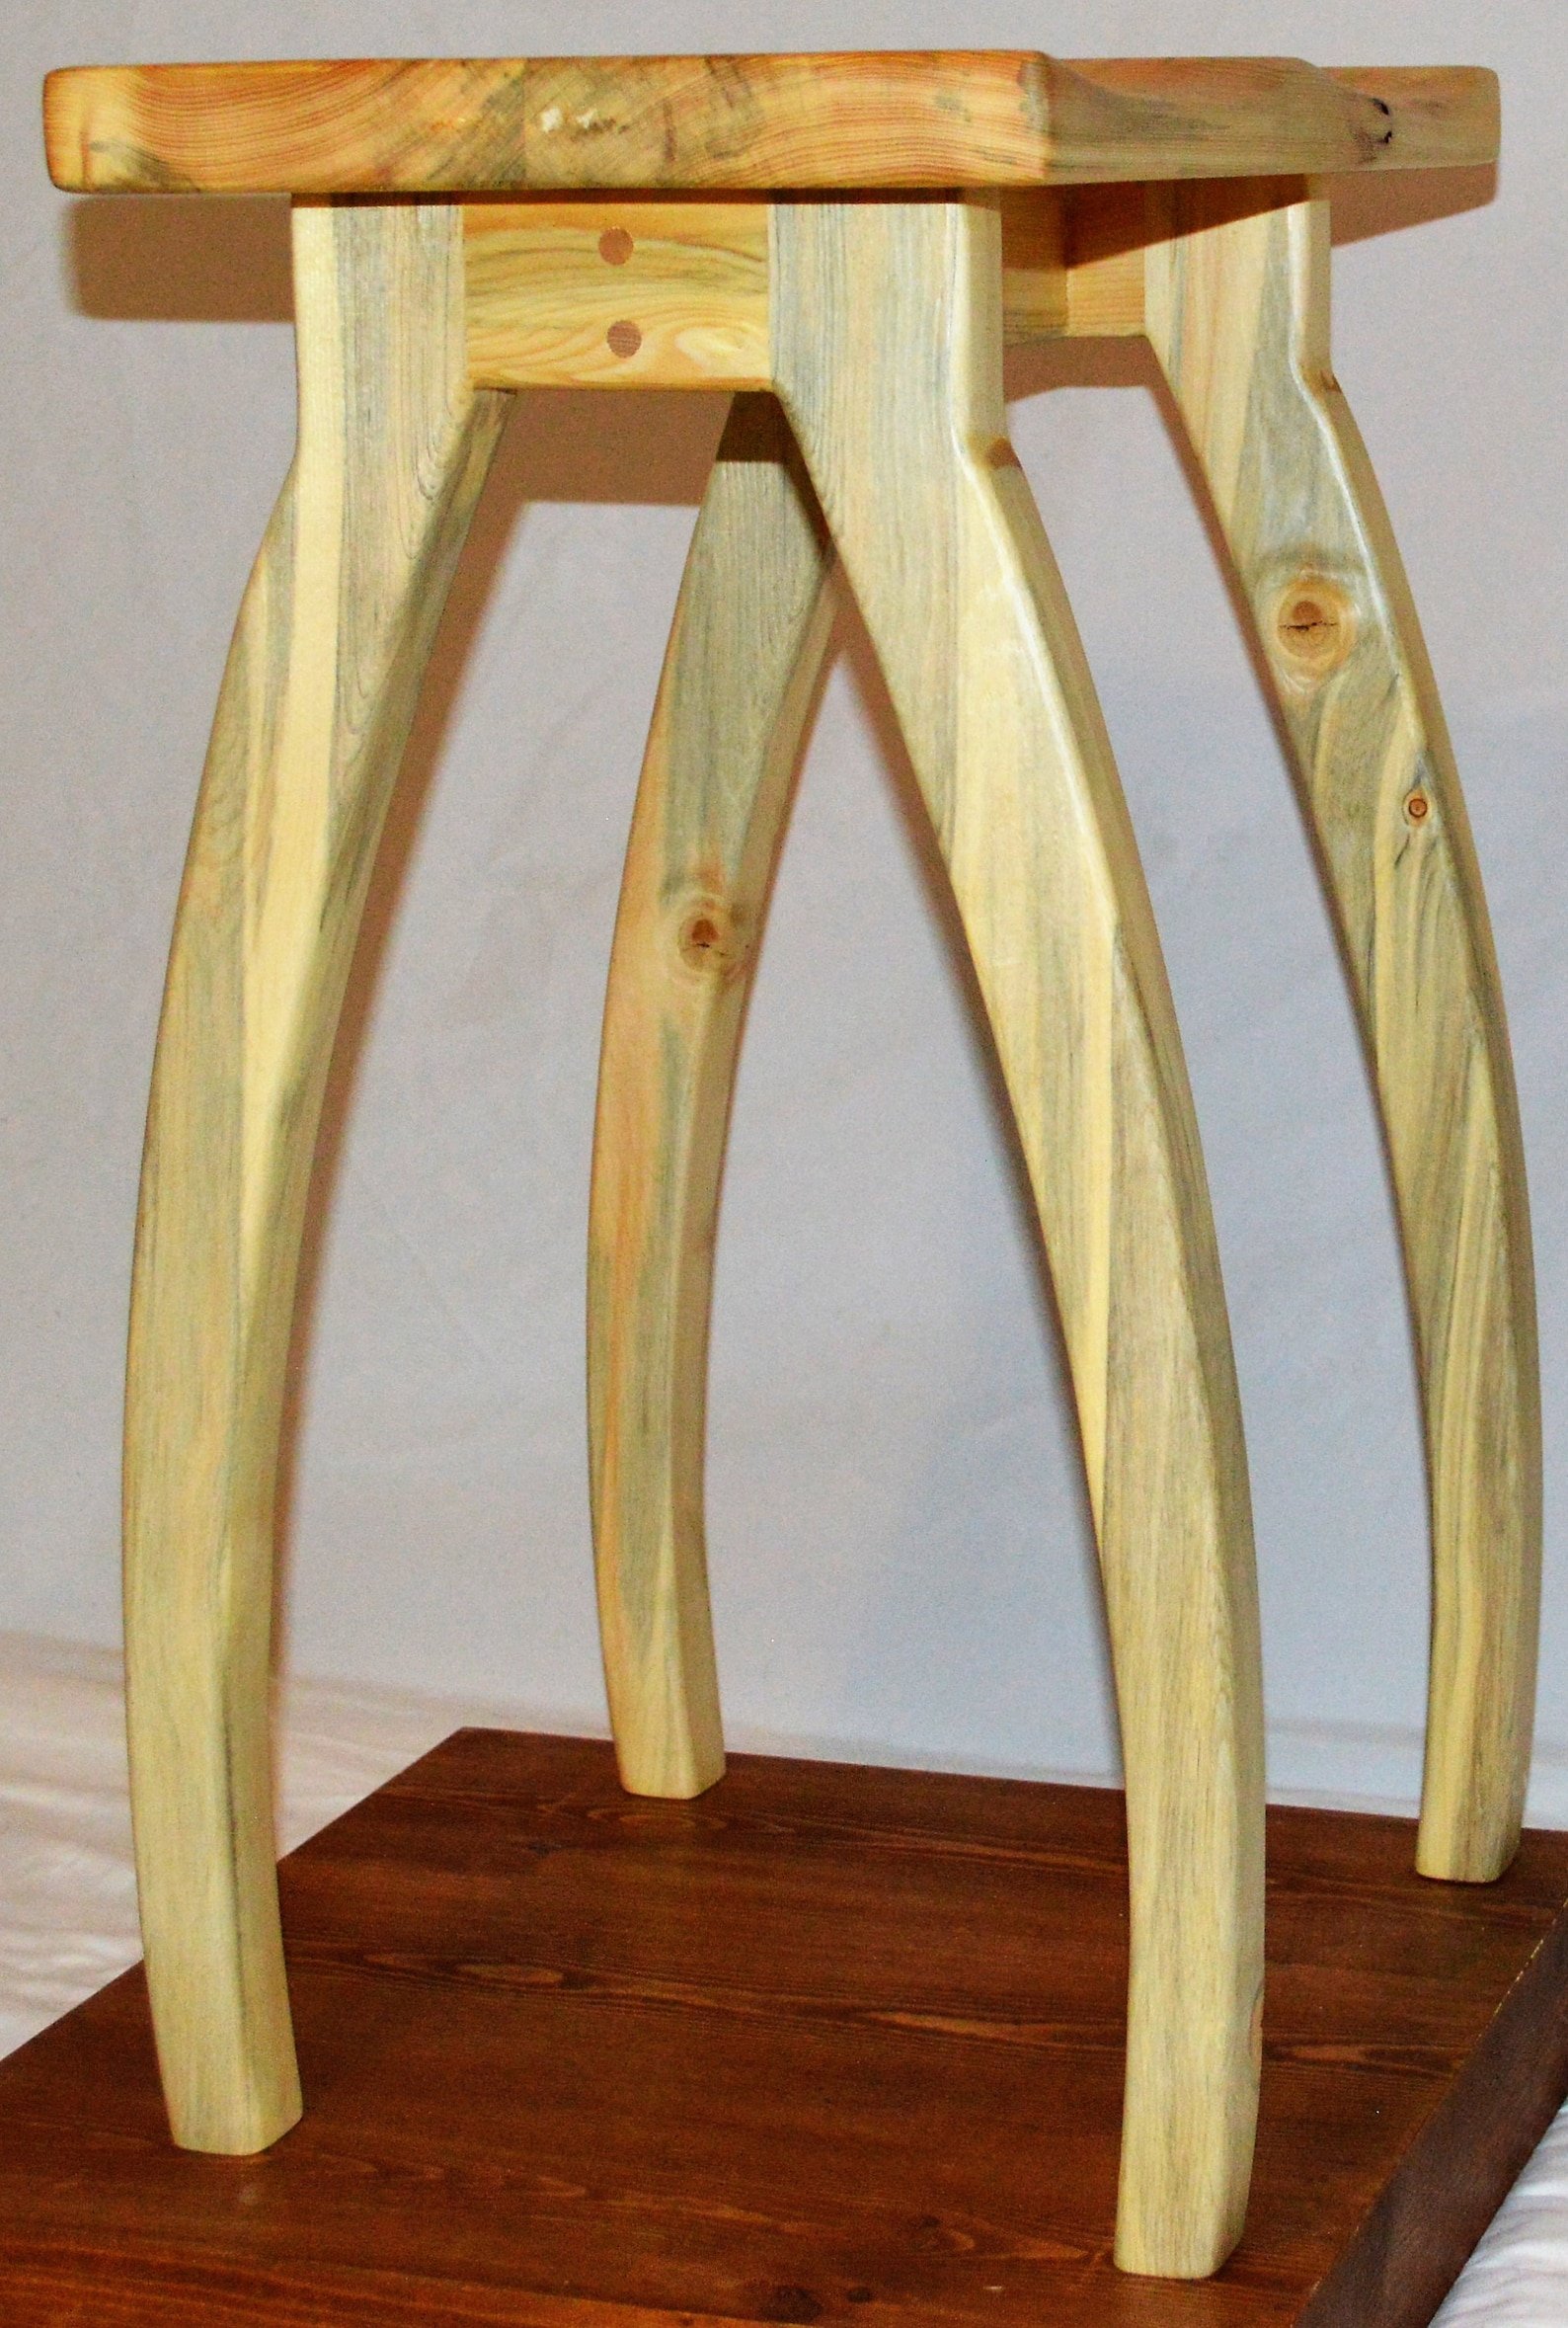 крепление деревянных ножек к стулу